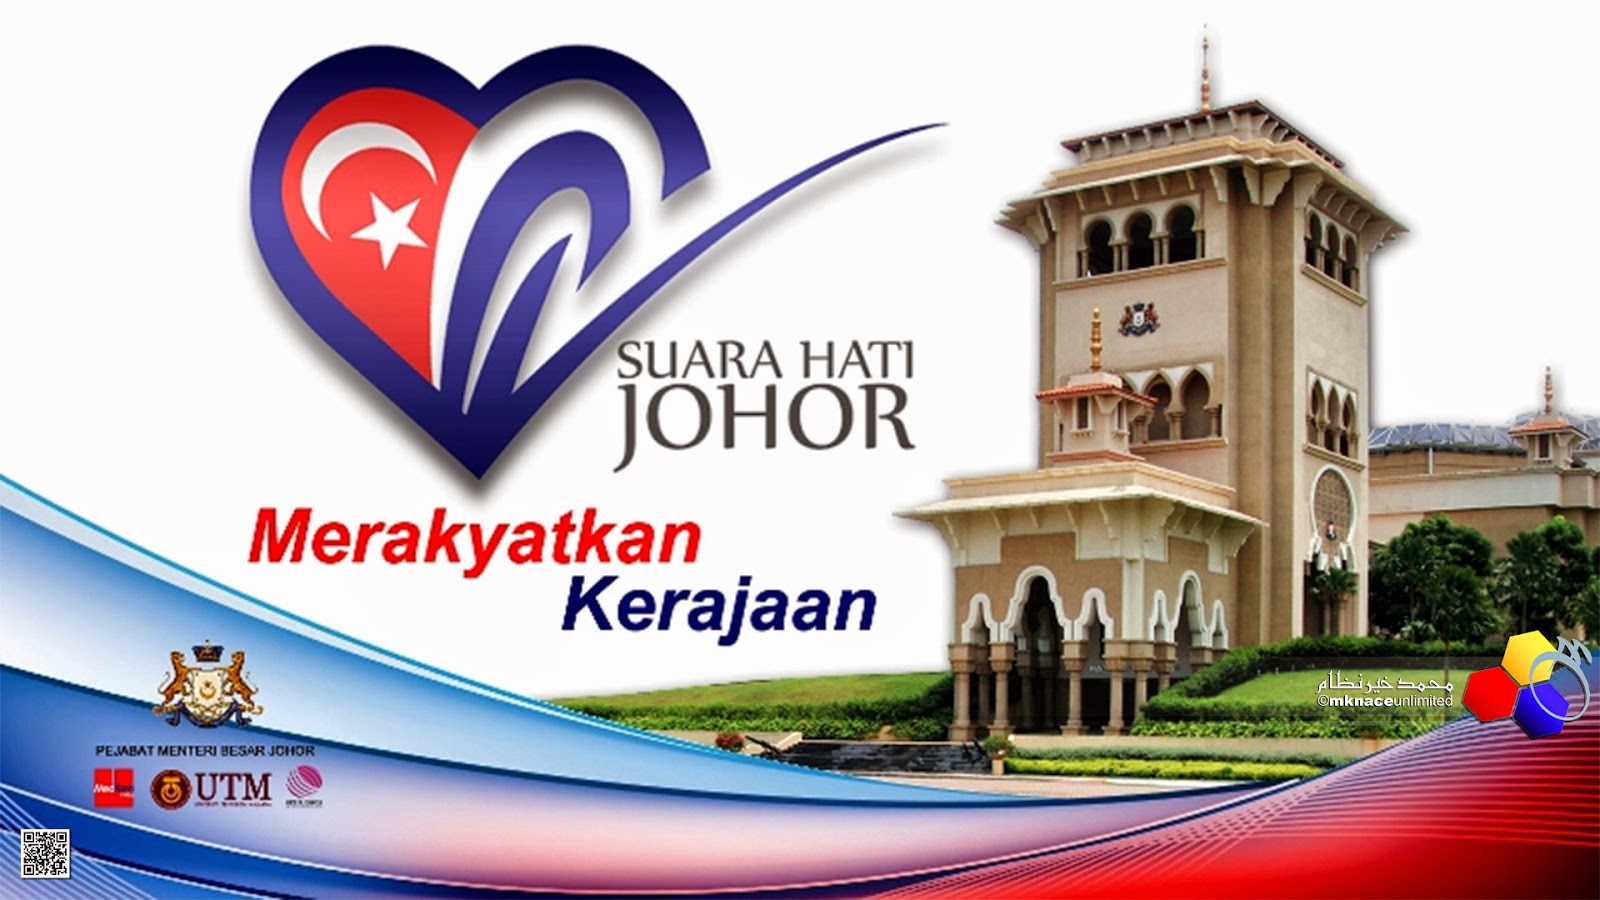 Pengumuman Jawatan Kosong Kerajaan Johor April 2016 